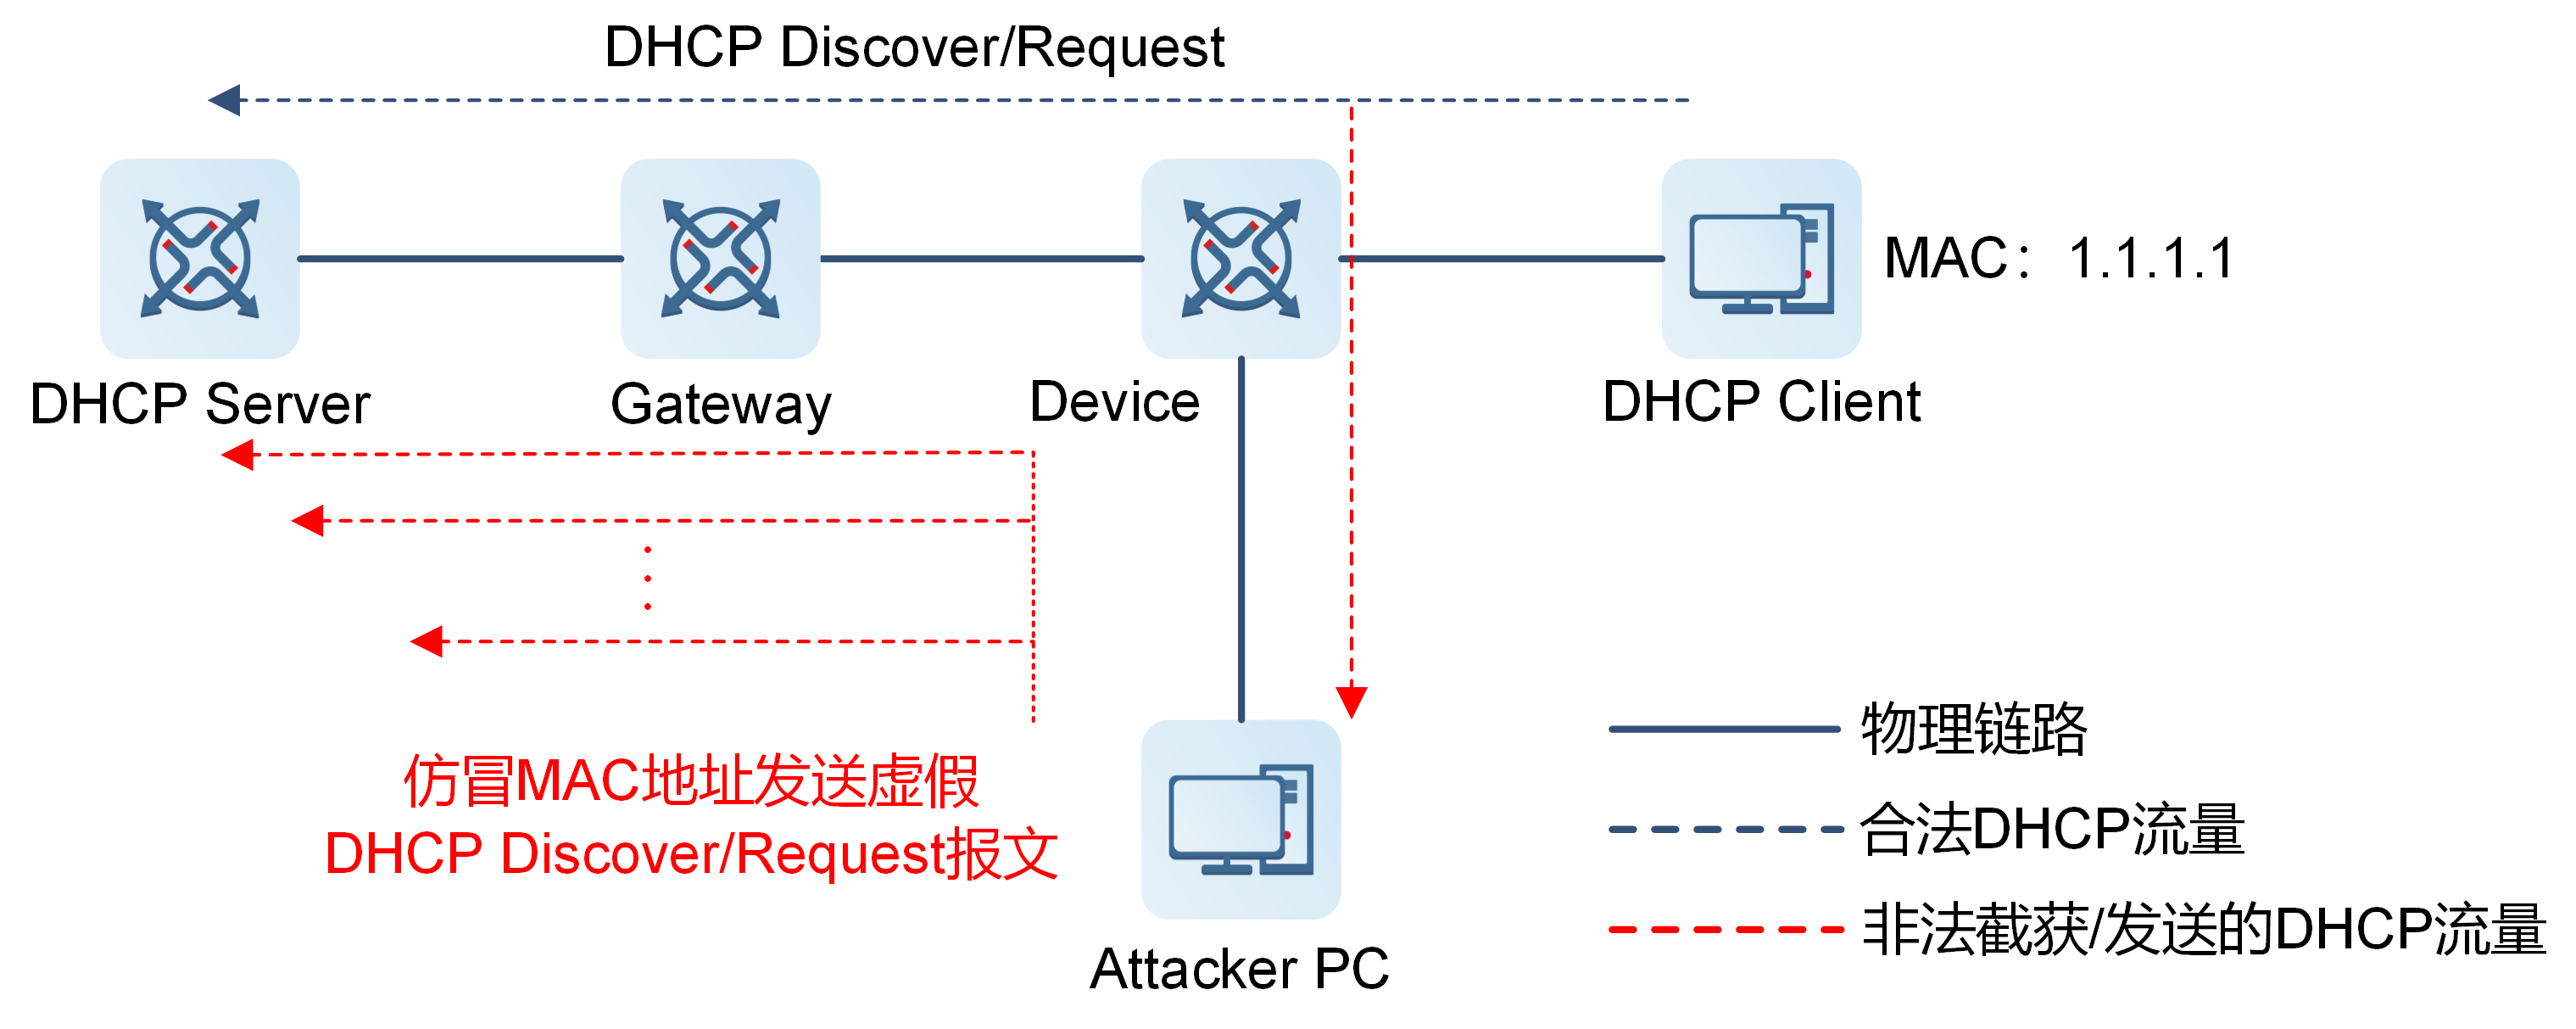 伪造DHCP报文攻击示意图